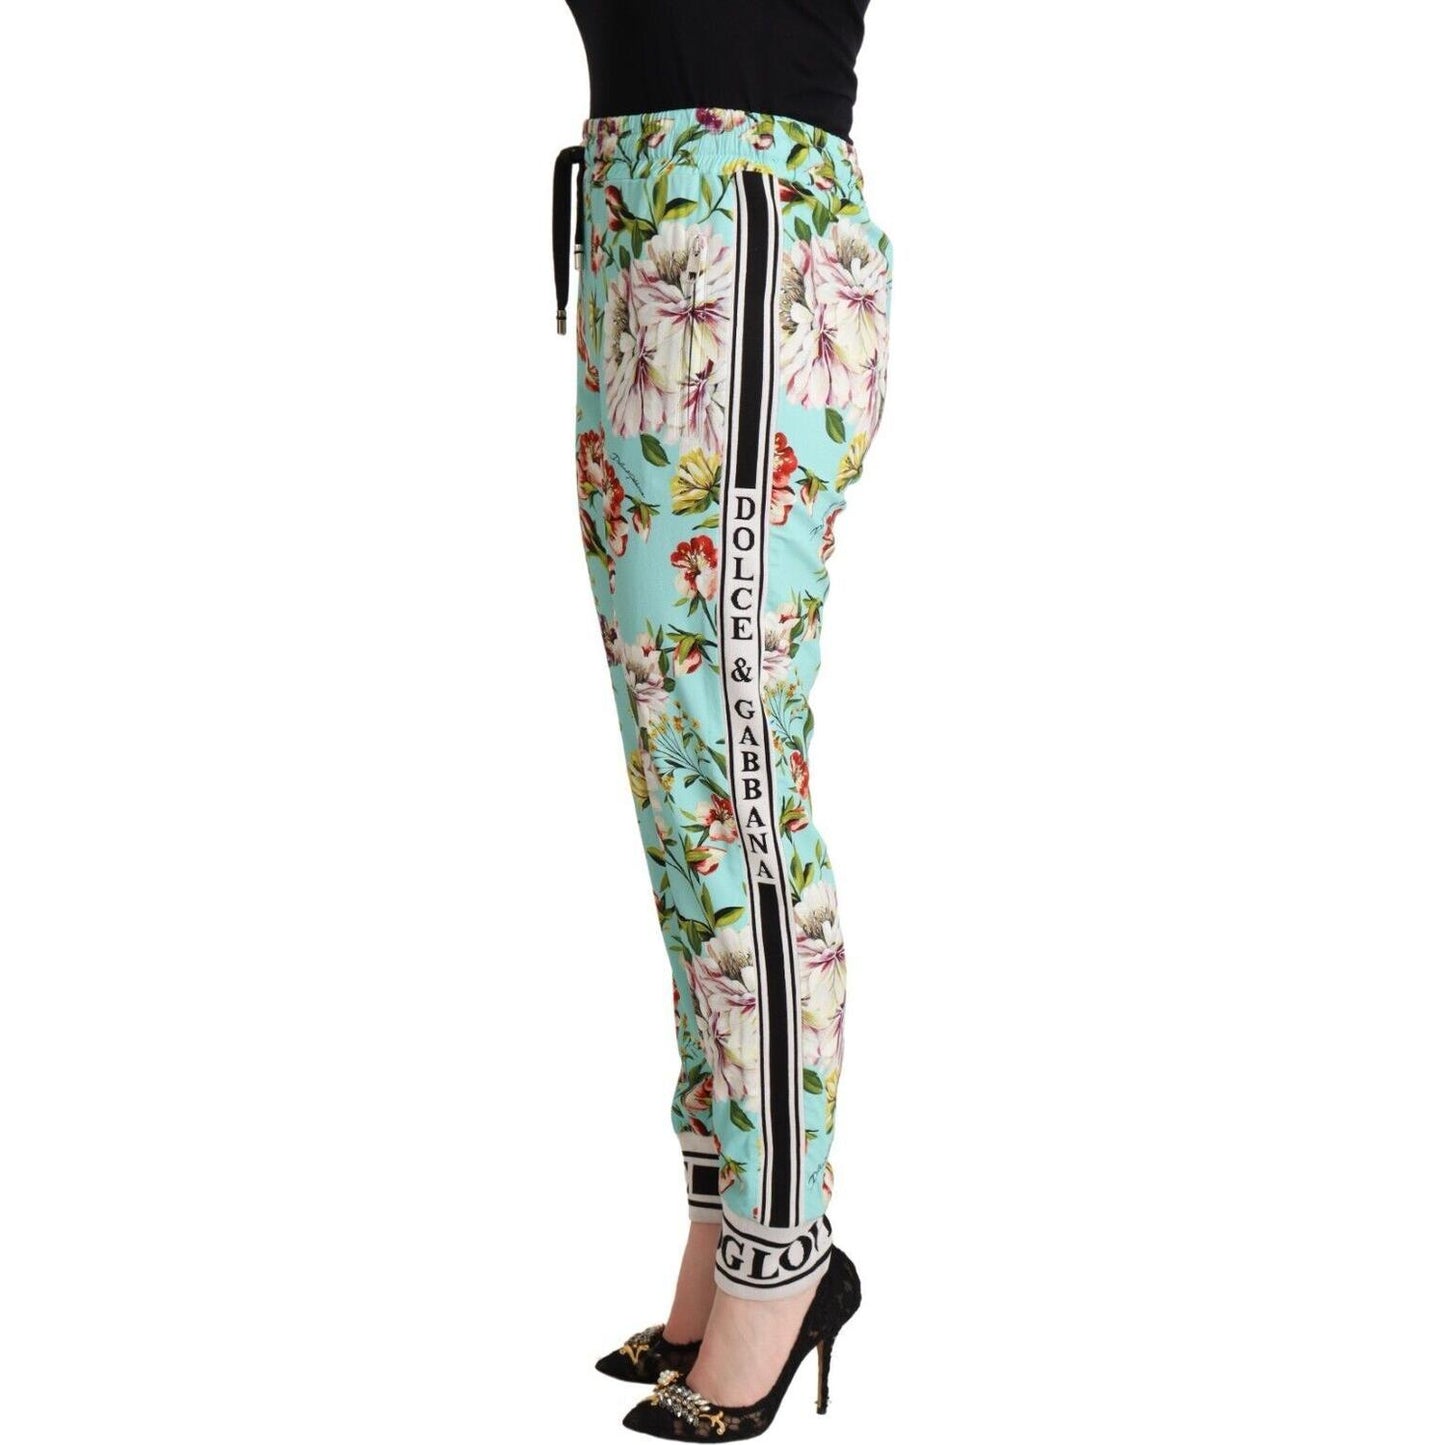 Dolce & Gabbana Green Floral Print Mid Waist Trouser Jogger Pants green-floral-print-mid-waist-trouser-jogger-pants s-l1600-43-6-7833dec1-1f7.jpg